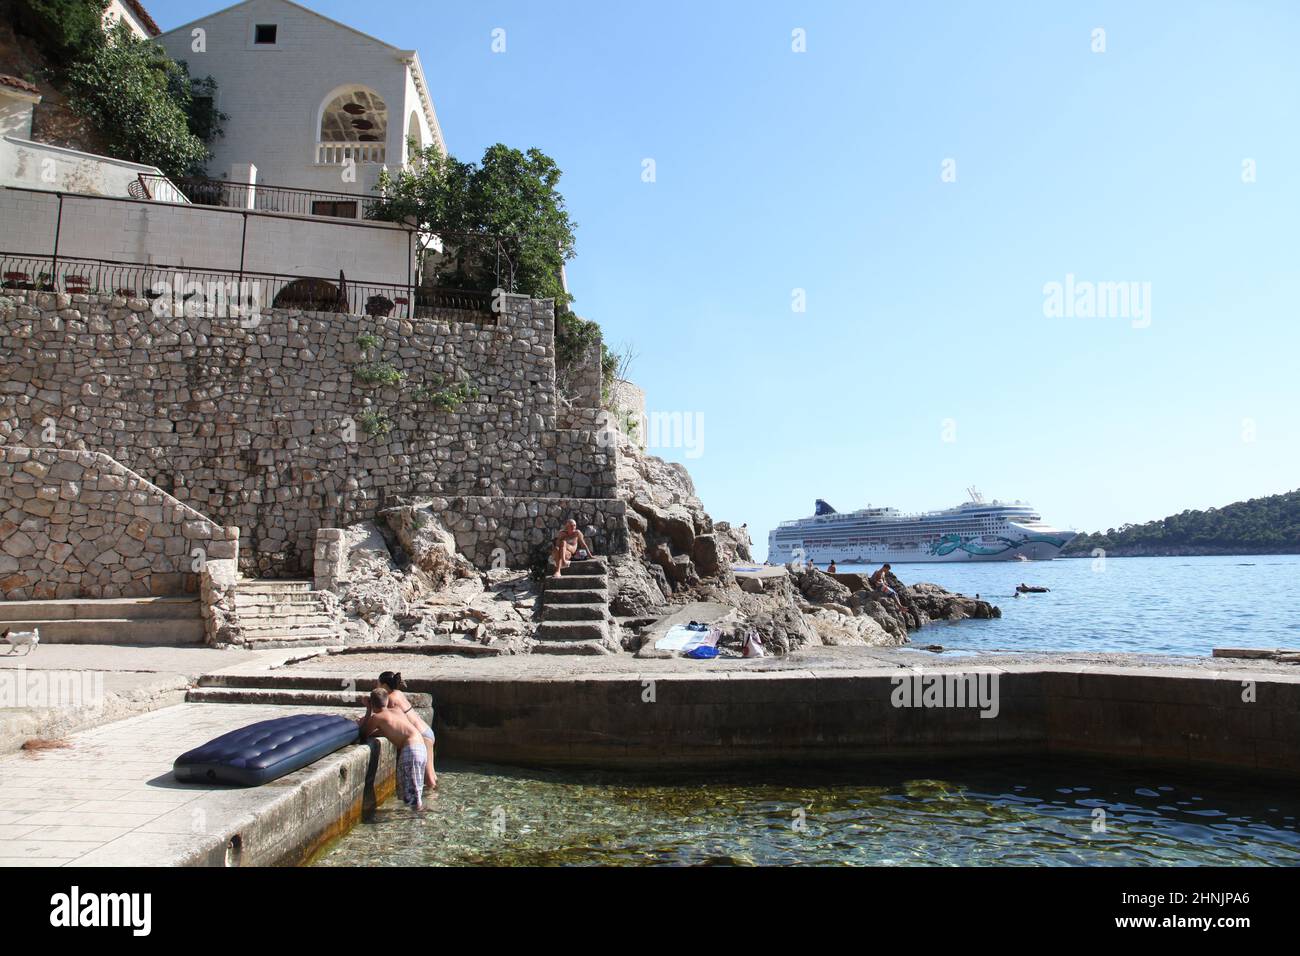 Das junge Paar genießt den Sommernachmittag am Strand von St. Jacob an der Adriaküste, während sich das Kreuzschiff Norwegian Jade dem Ankerplatz in der Lapad-Bucht von Dubrovnik nähert. Stockfoto